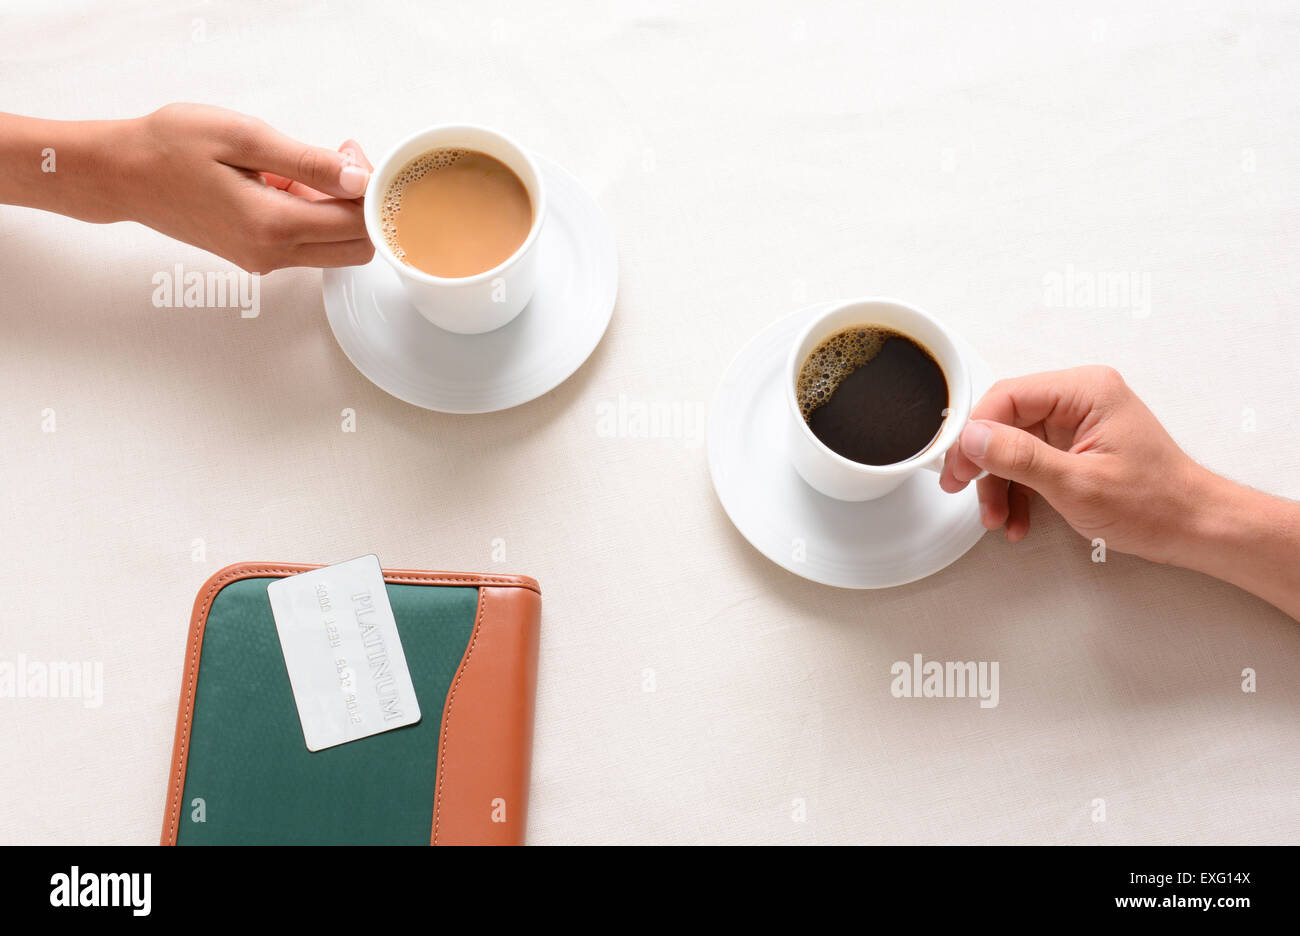 Mann und Frau über eine Cafétisch für ihre Kaffeetassen zu erreichen. Obenliegende Nahaufnahme mit nur die Völker Hände gezeigt wird. Stockfoto